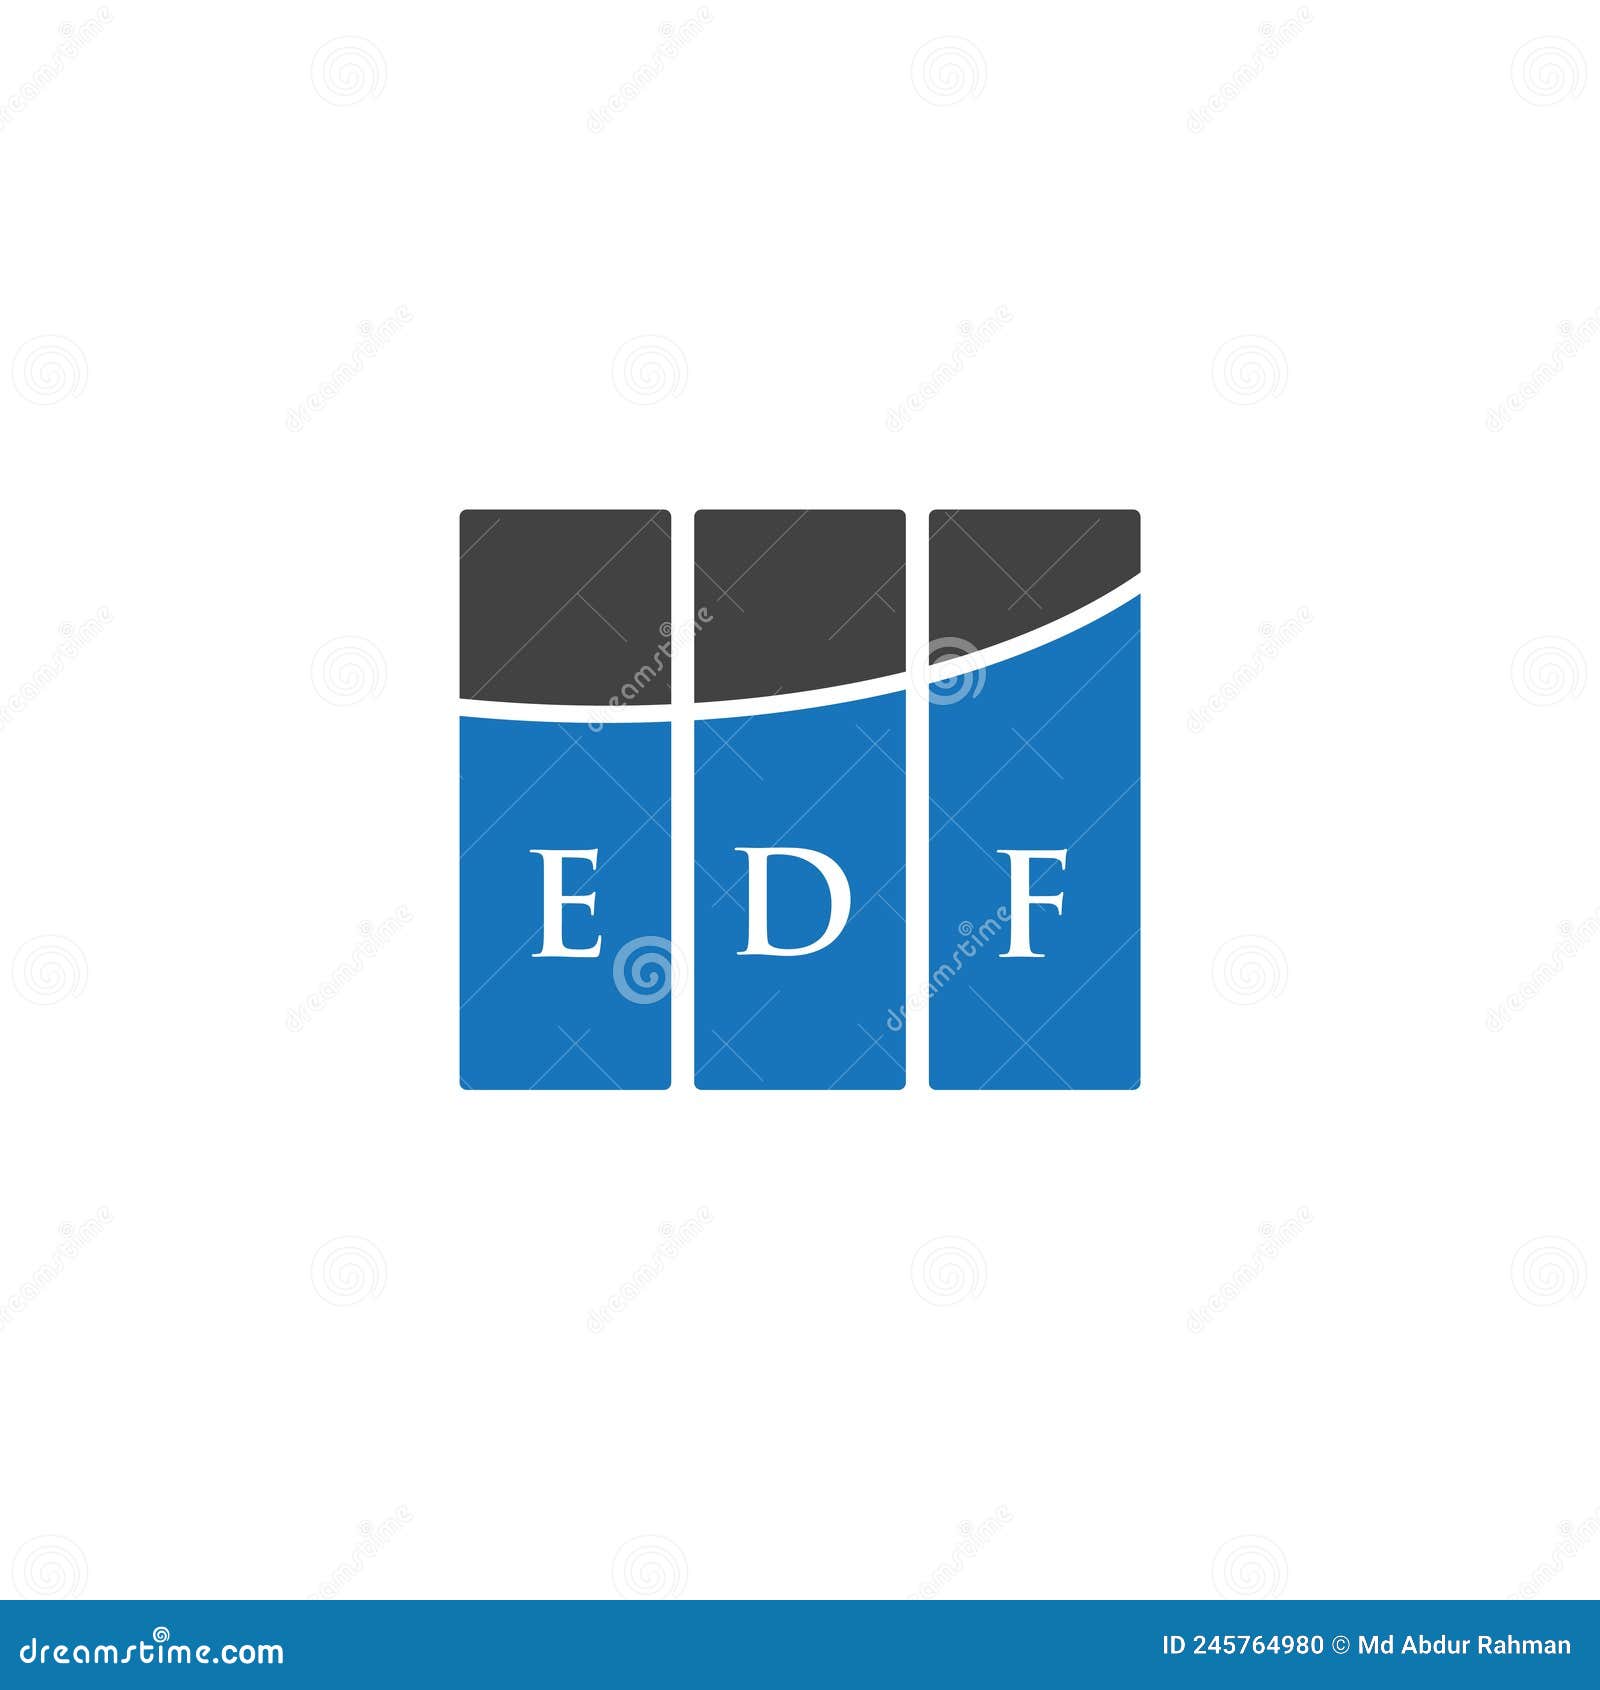 edf letter logo  on white background. edf creative initials letter logo concept. edf letter .edf letter logo  on